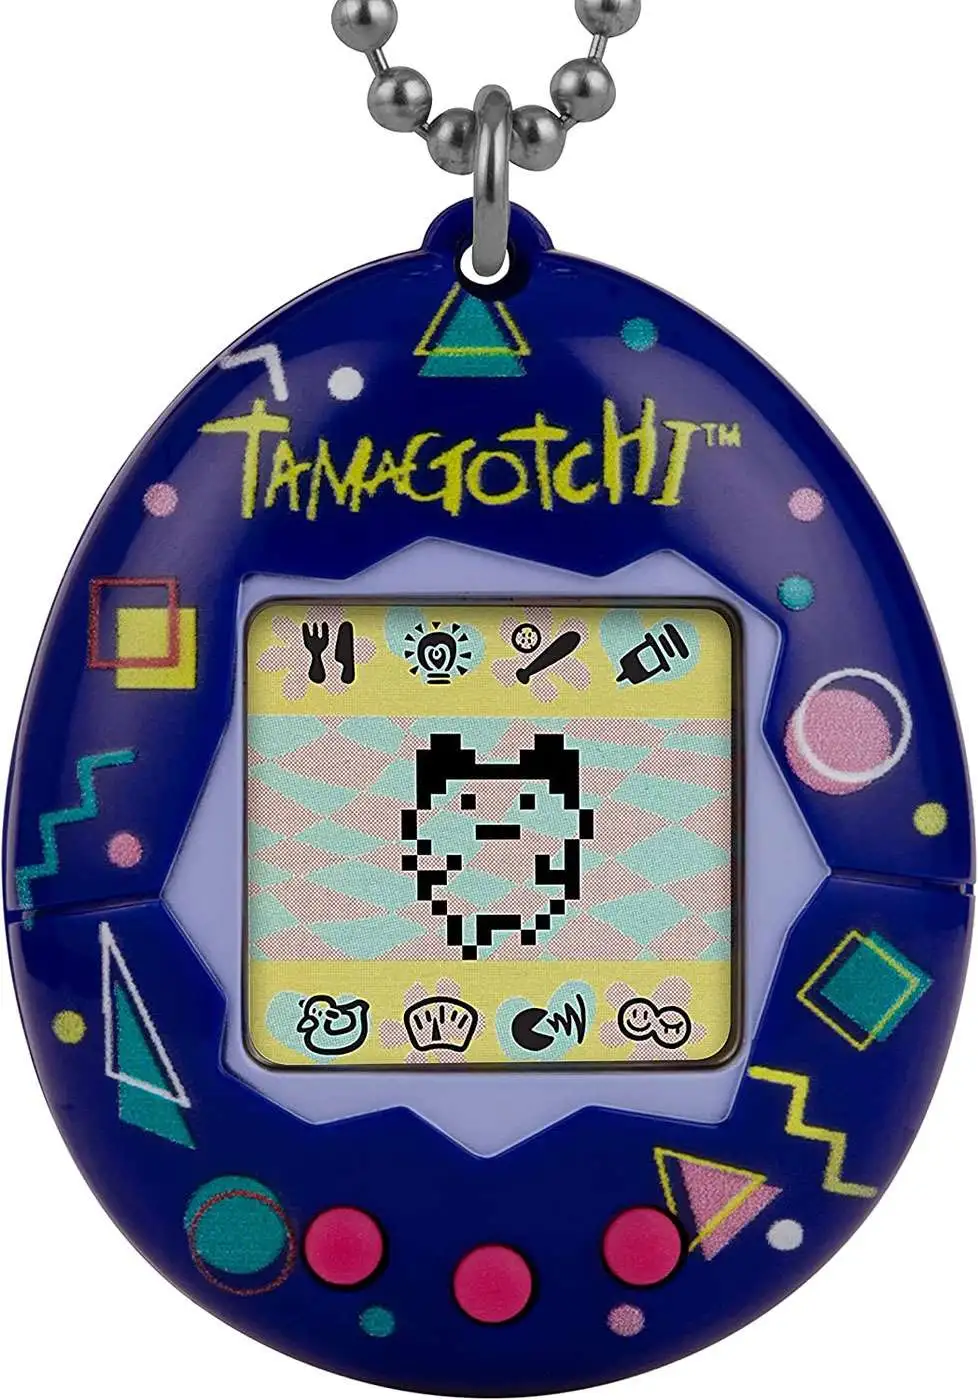 Tamagotchi Original Retro Flowers Digital Pet